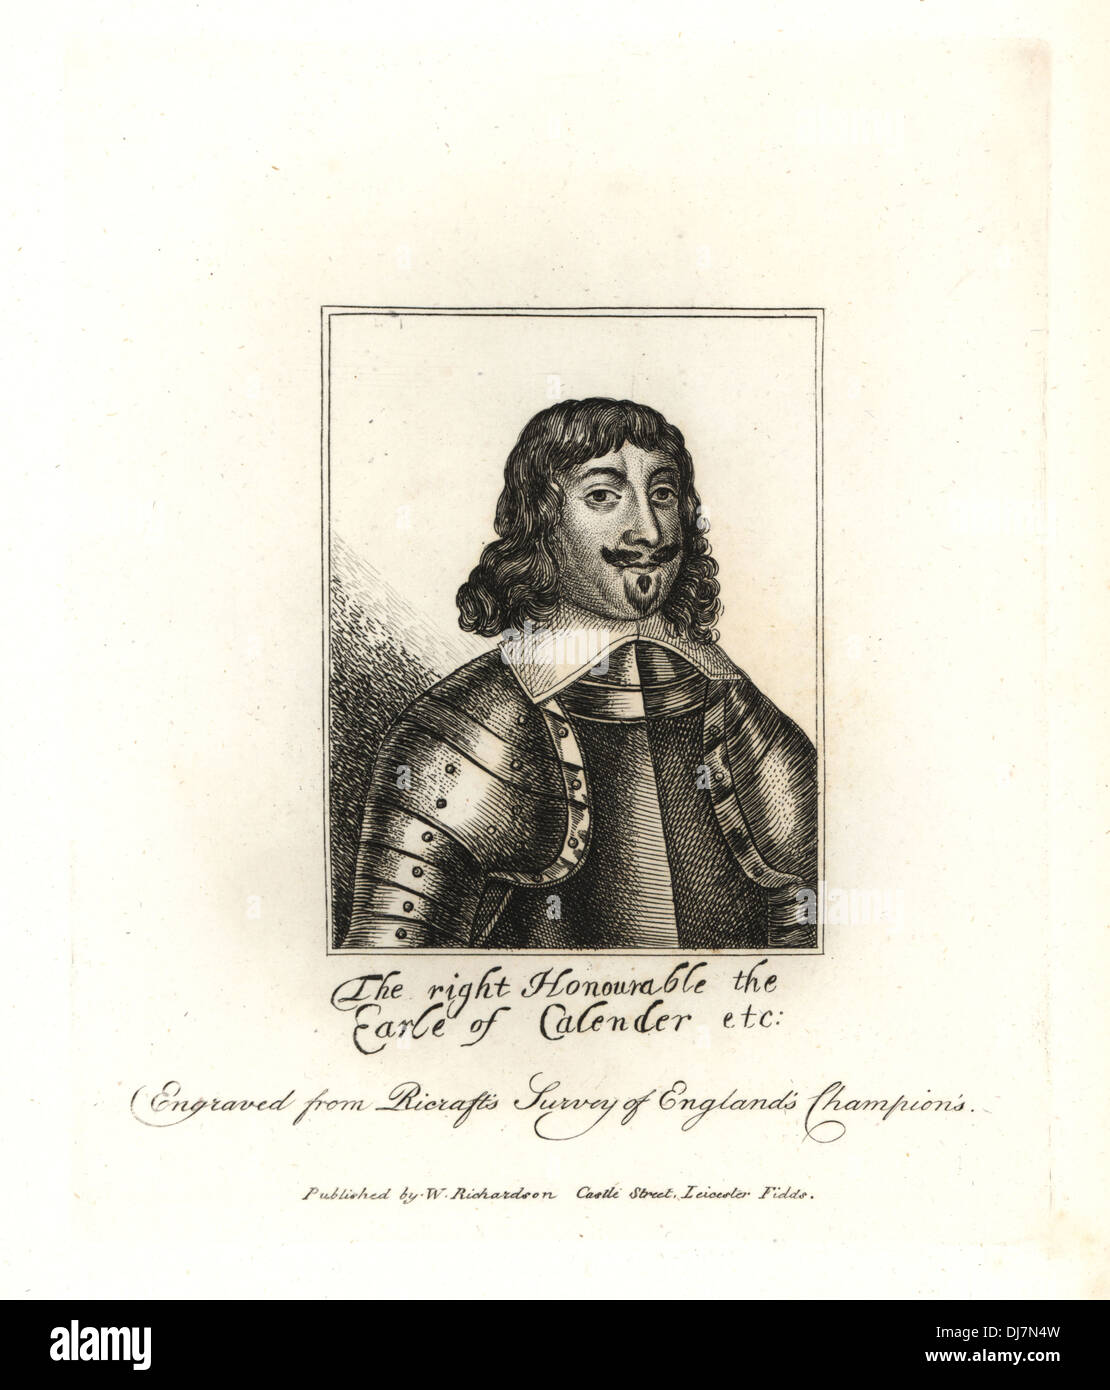 James Livingston, Earl of Callendar. Stock Photo